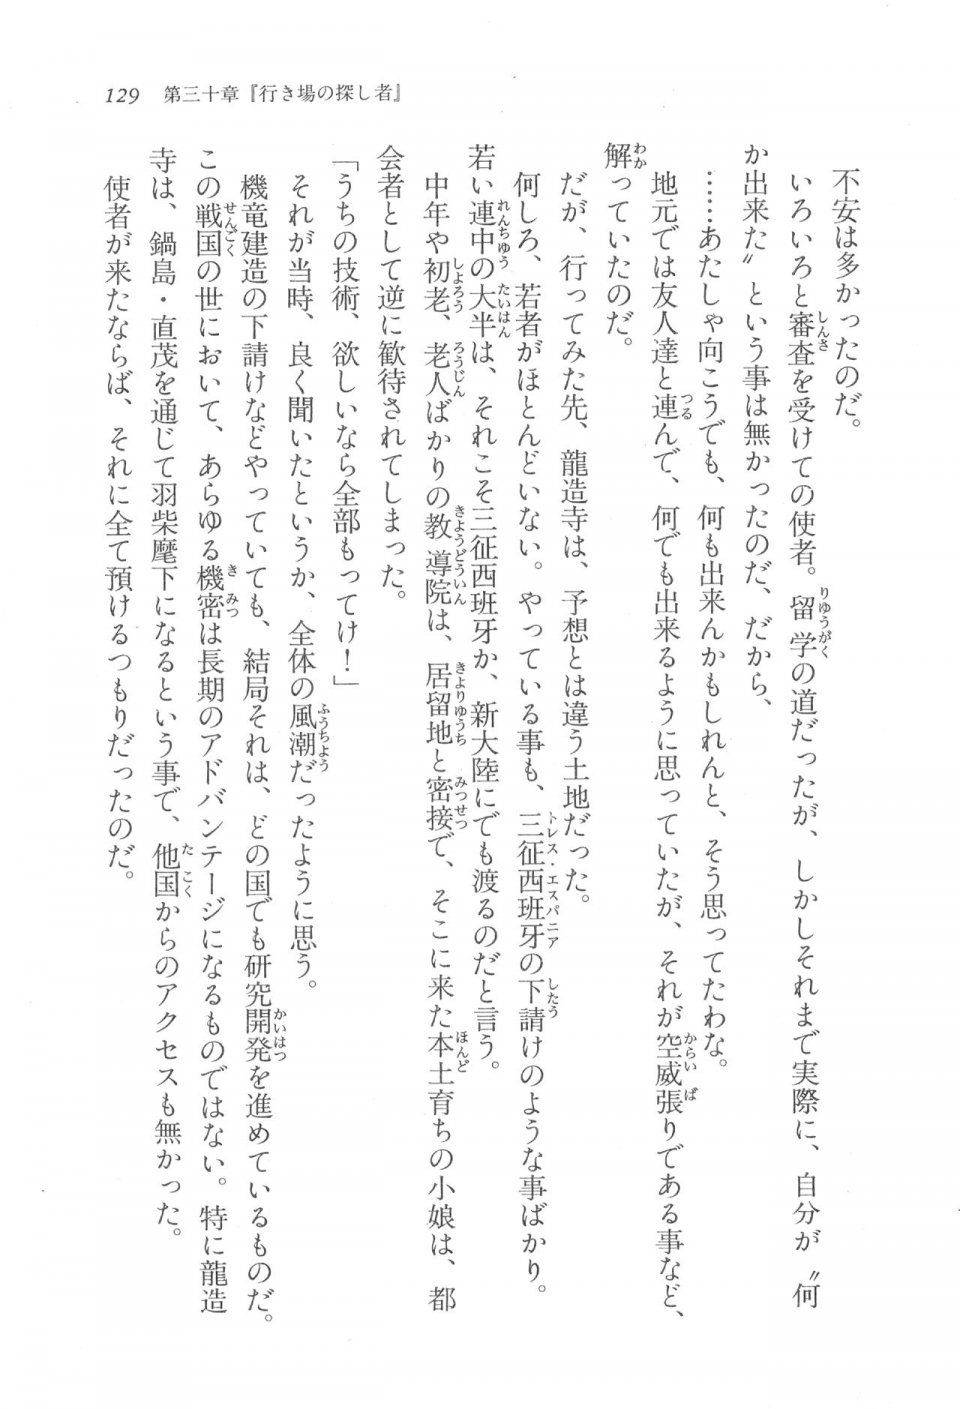 Kyoukai Senjou no Horizon LN Vol 17(7B) - Photo #129